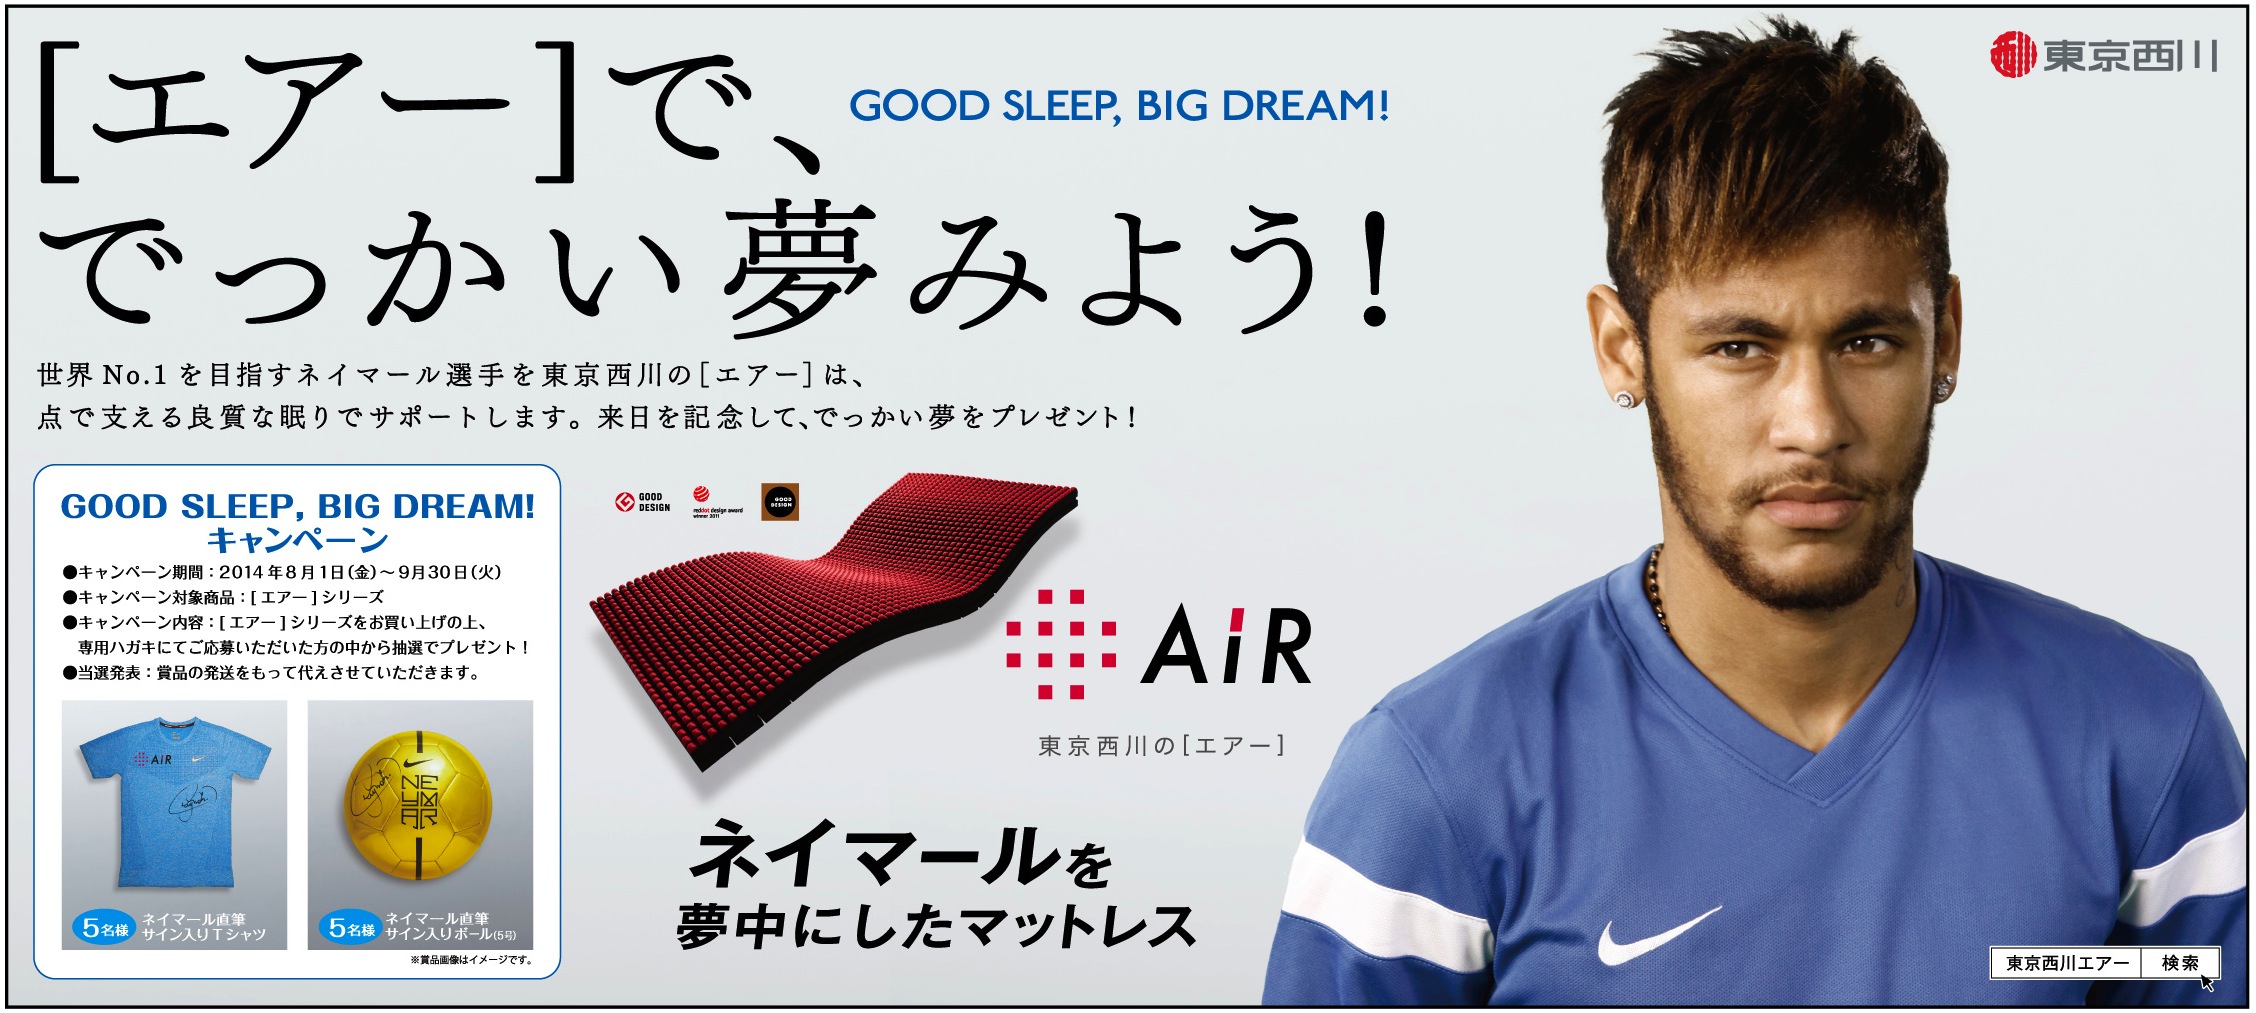 ネイマールjr 選手の 眠り を支えてきた 寝具メーカー 東京西川 がサポート契約を締結 西川株式会社のプレスリリース